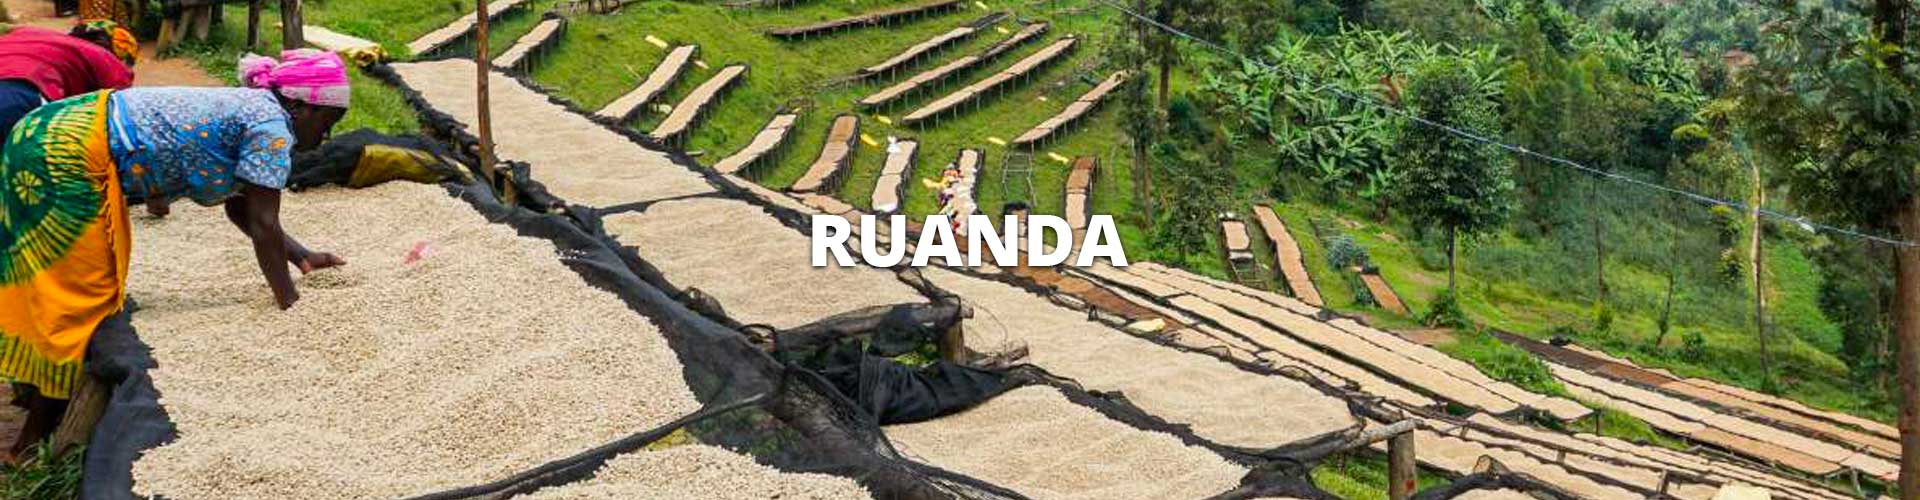 ruanda-header